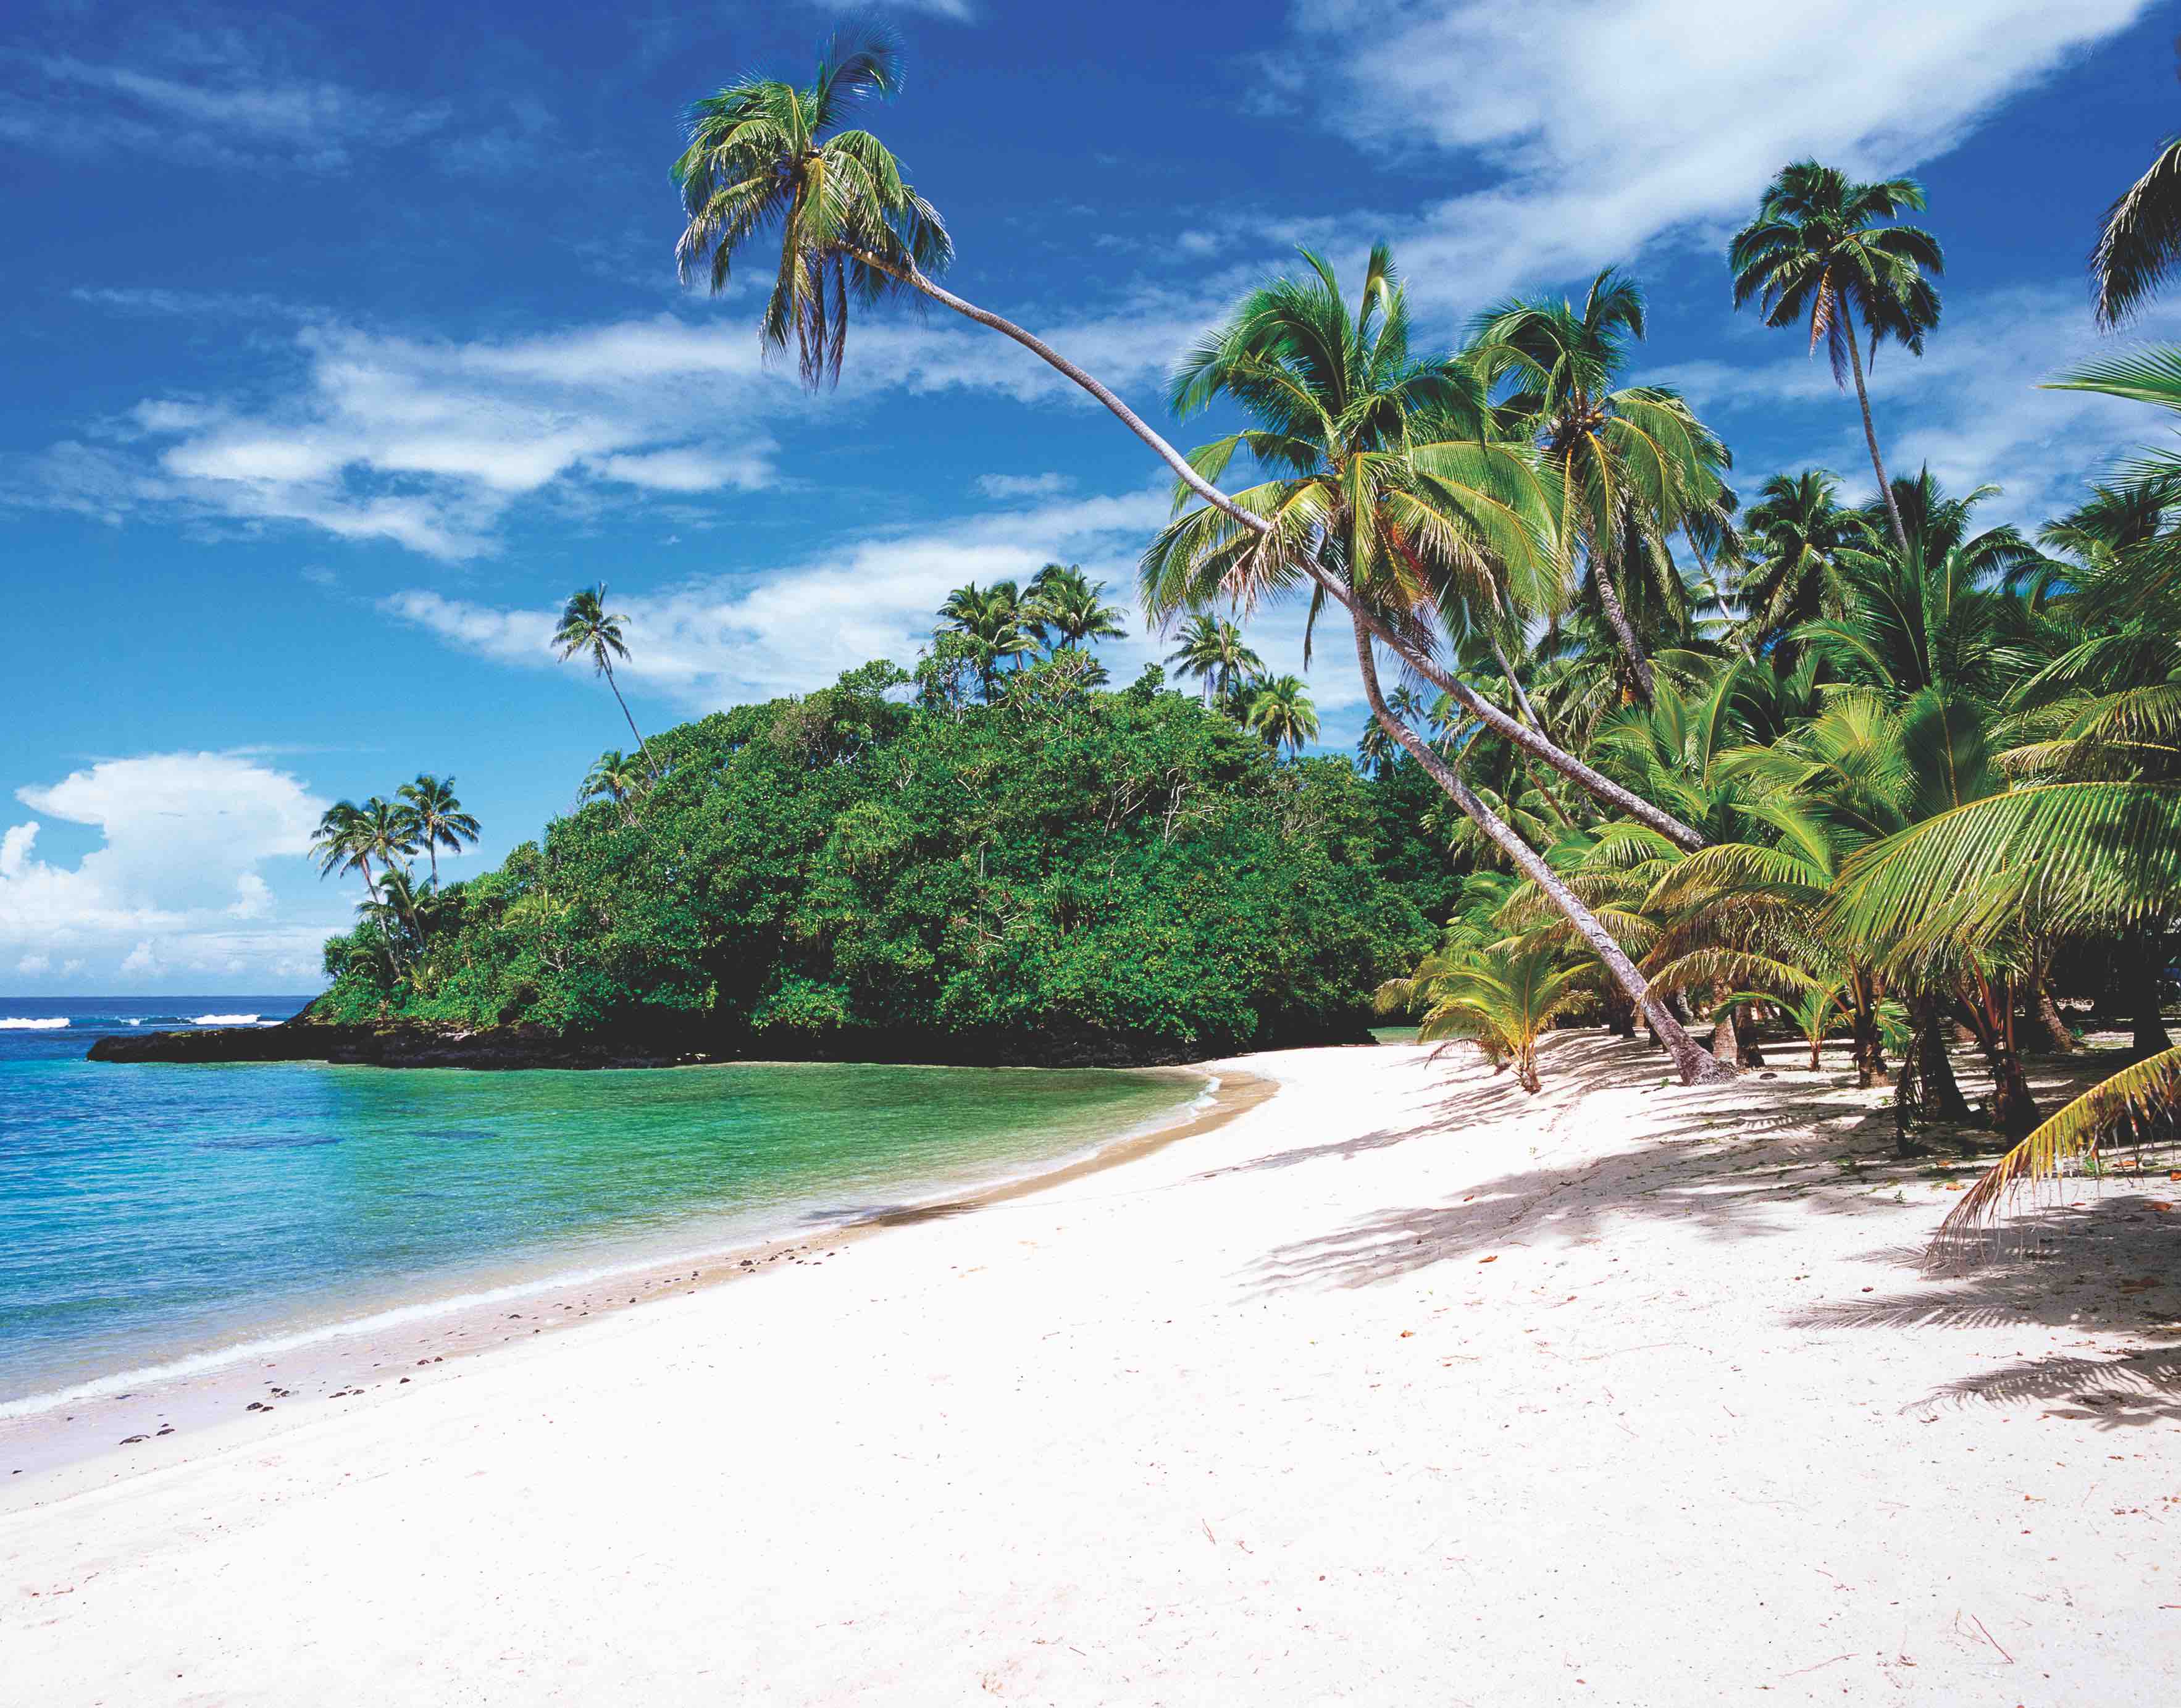 samoa island tour dominican republic